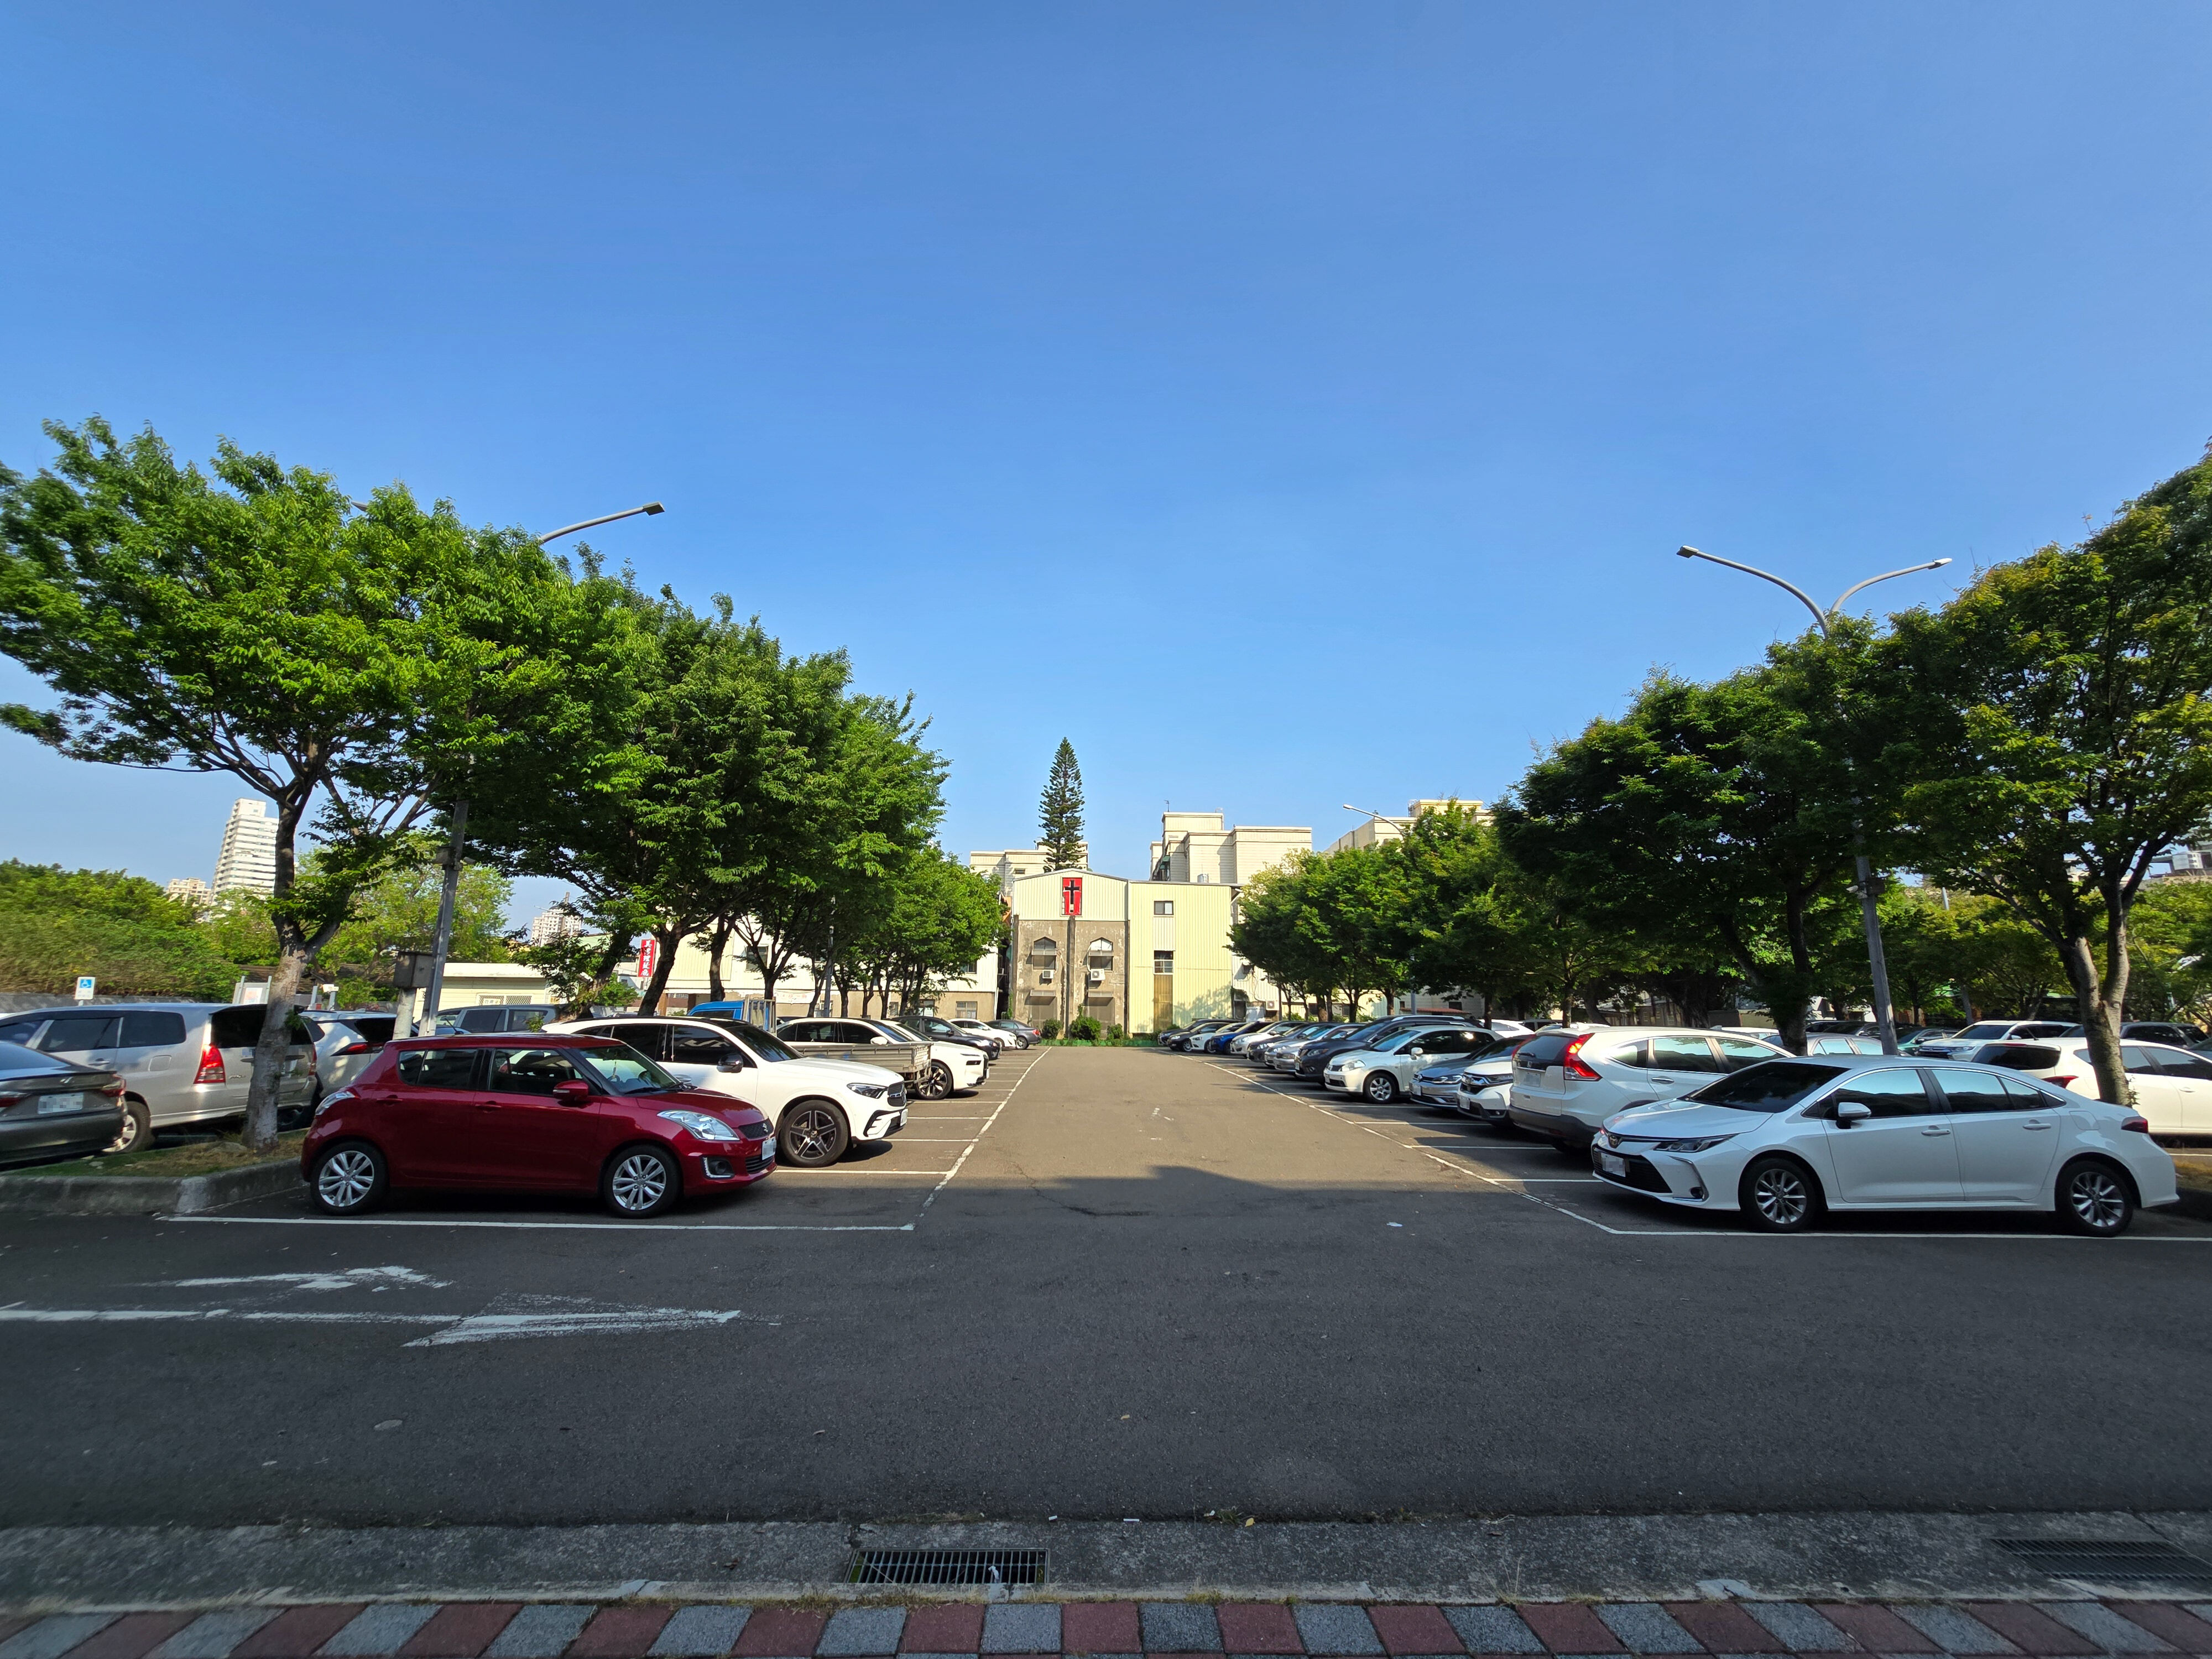 竹市獲3.65億補助將興建「延平地下停車場」